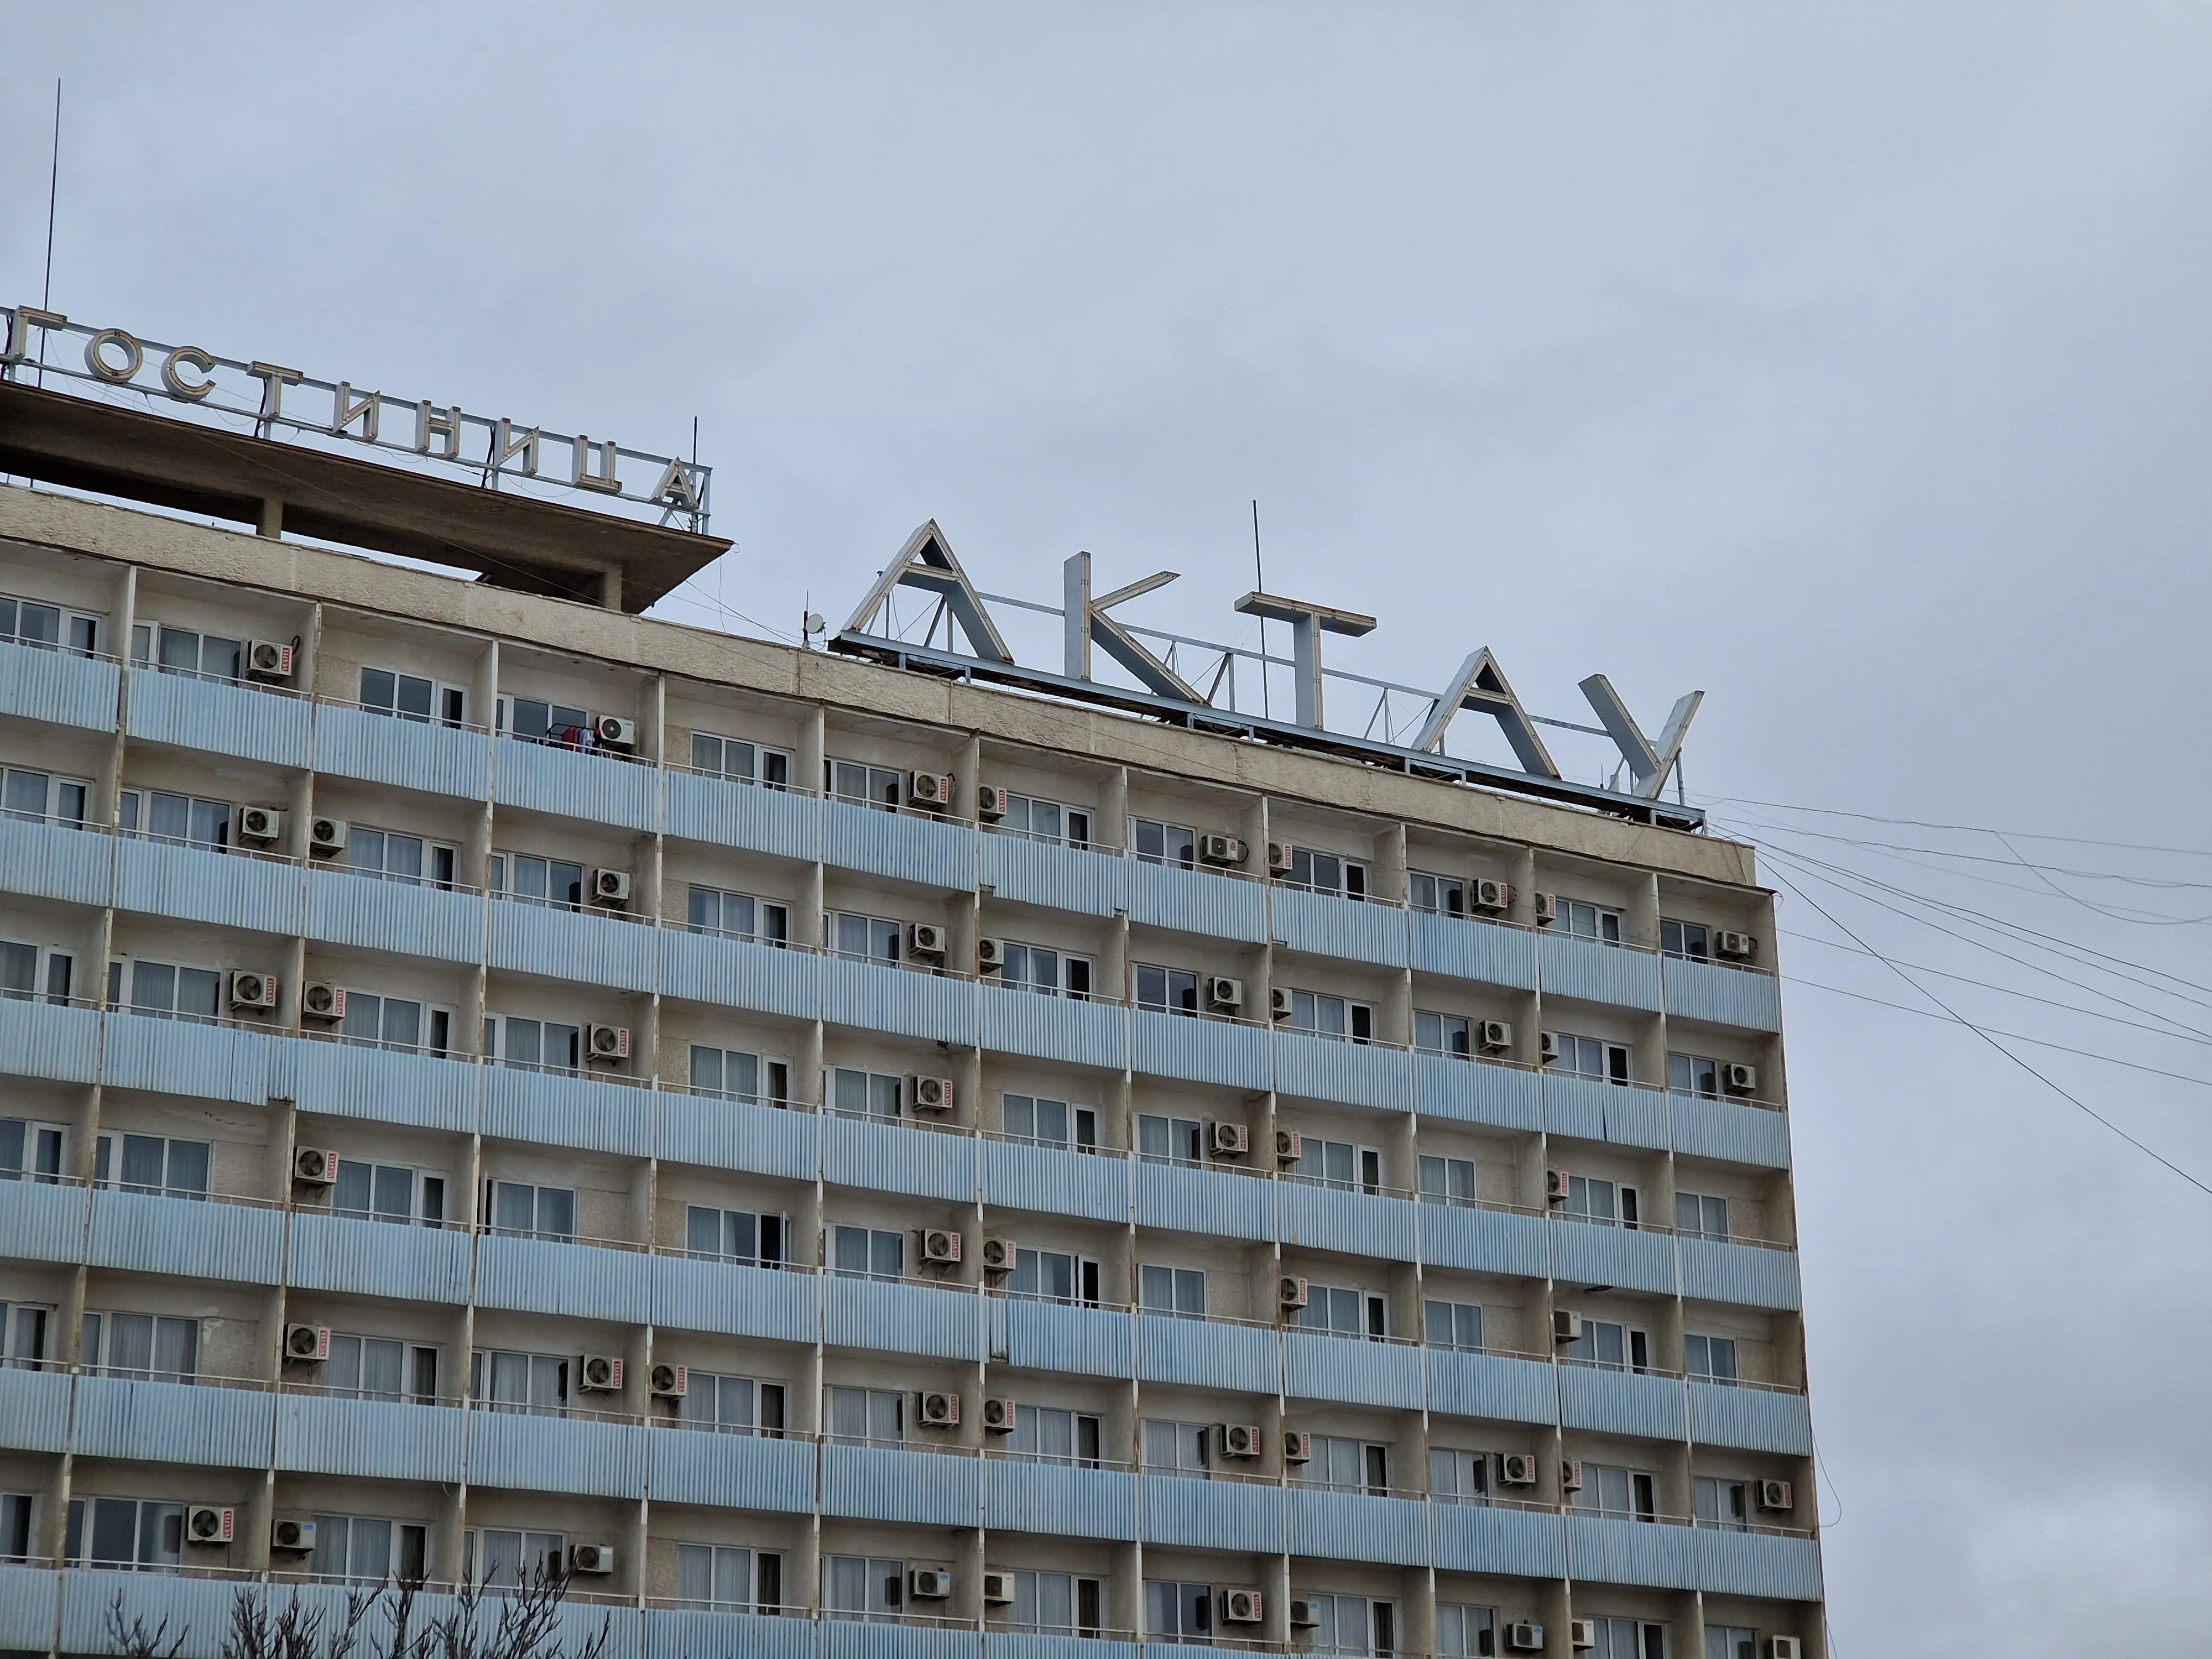 Un immeuble au style soviétique avec un grand signe "Актау" (Aktau en cyrillique russe) à son sommet